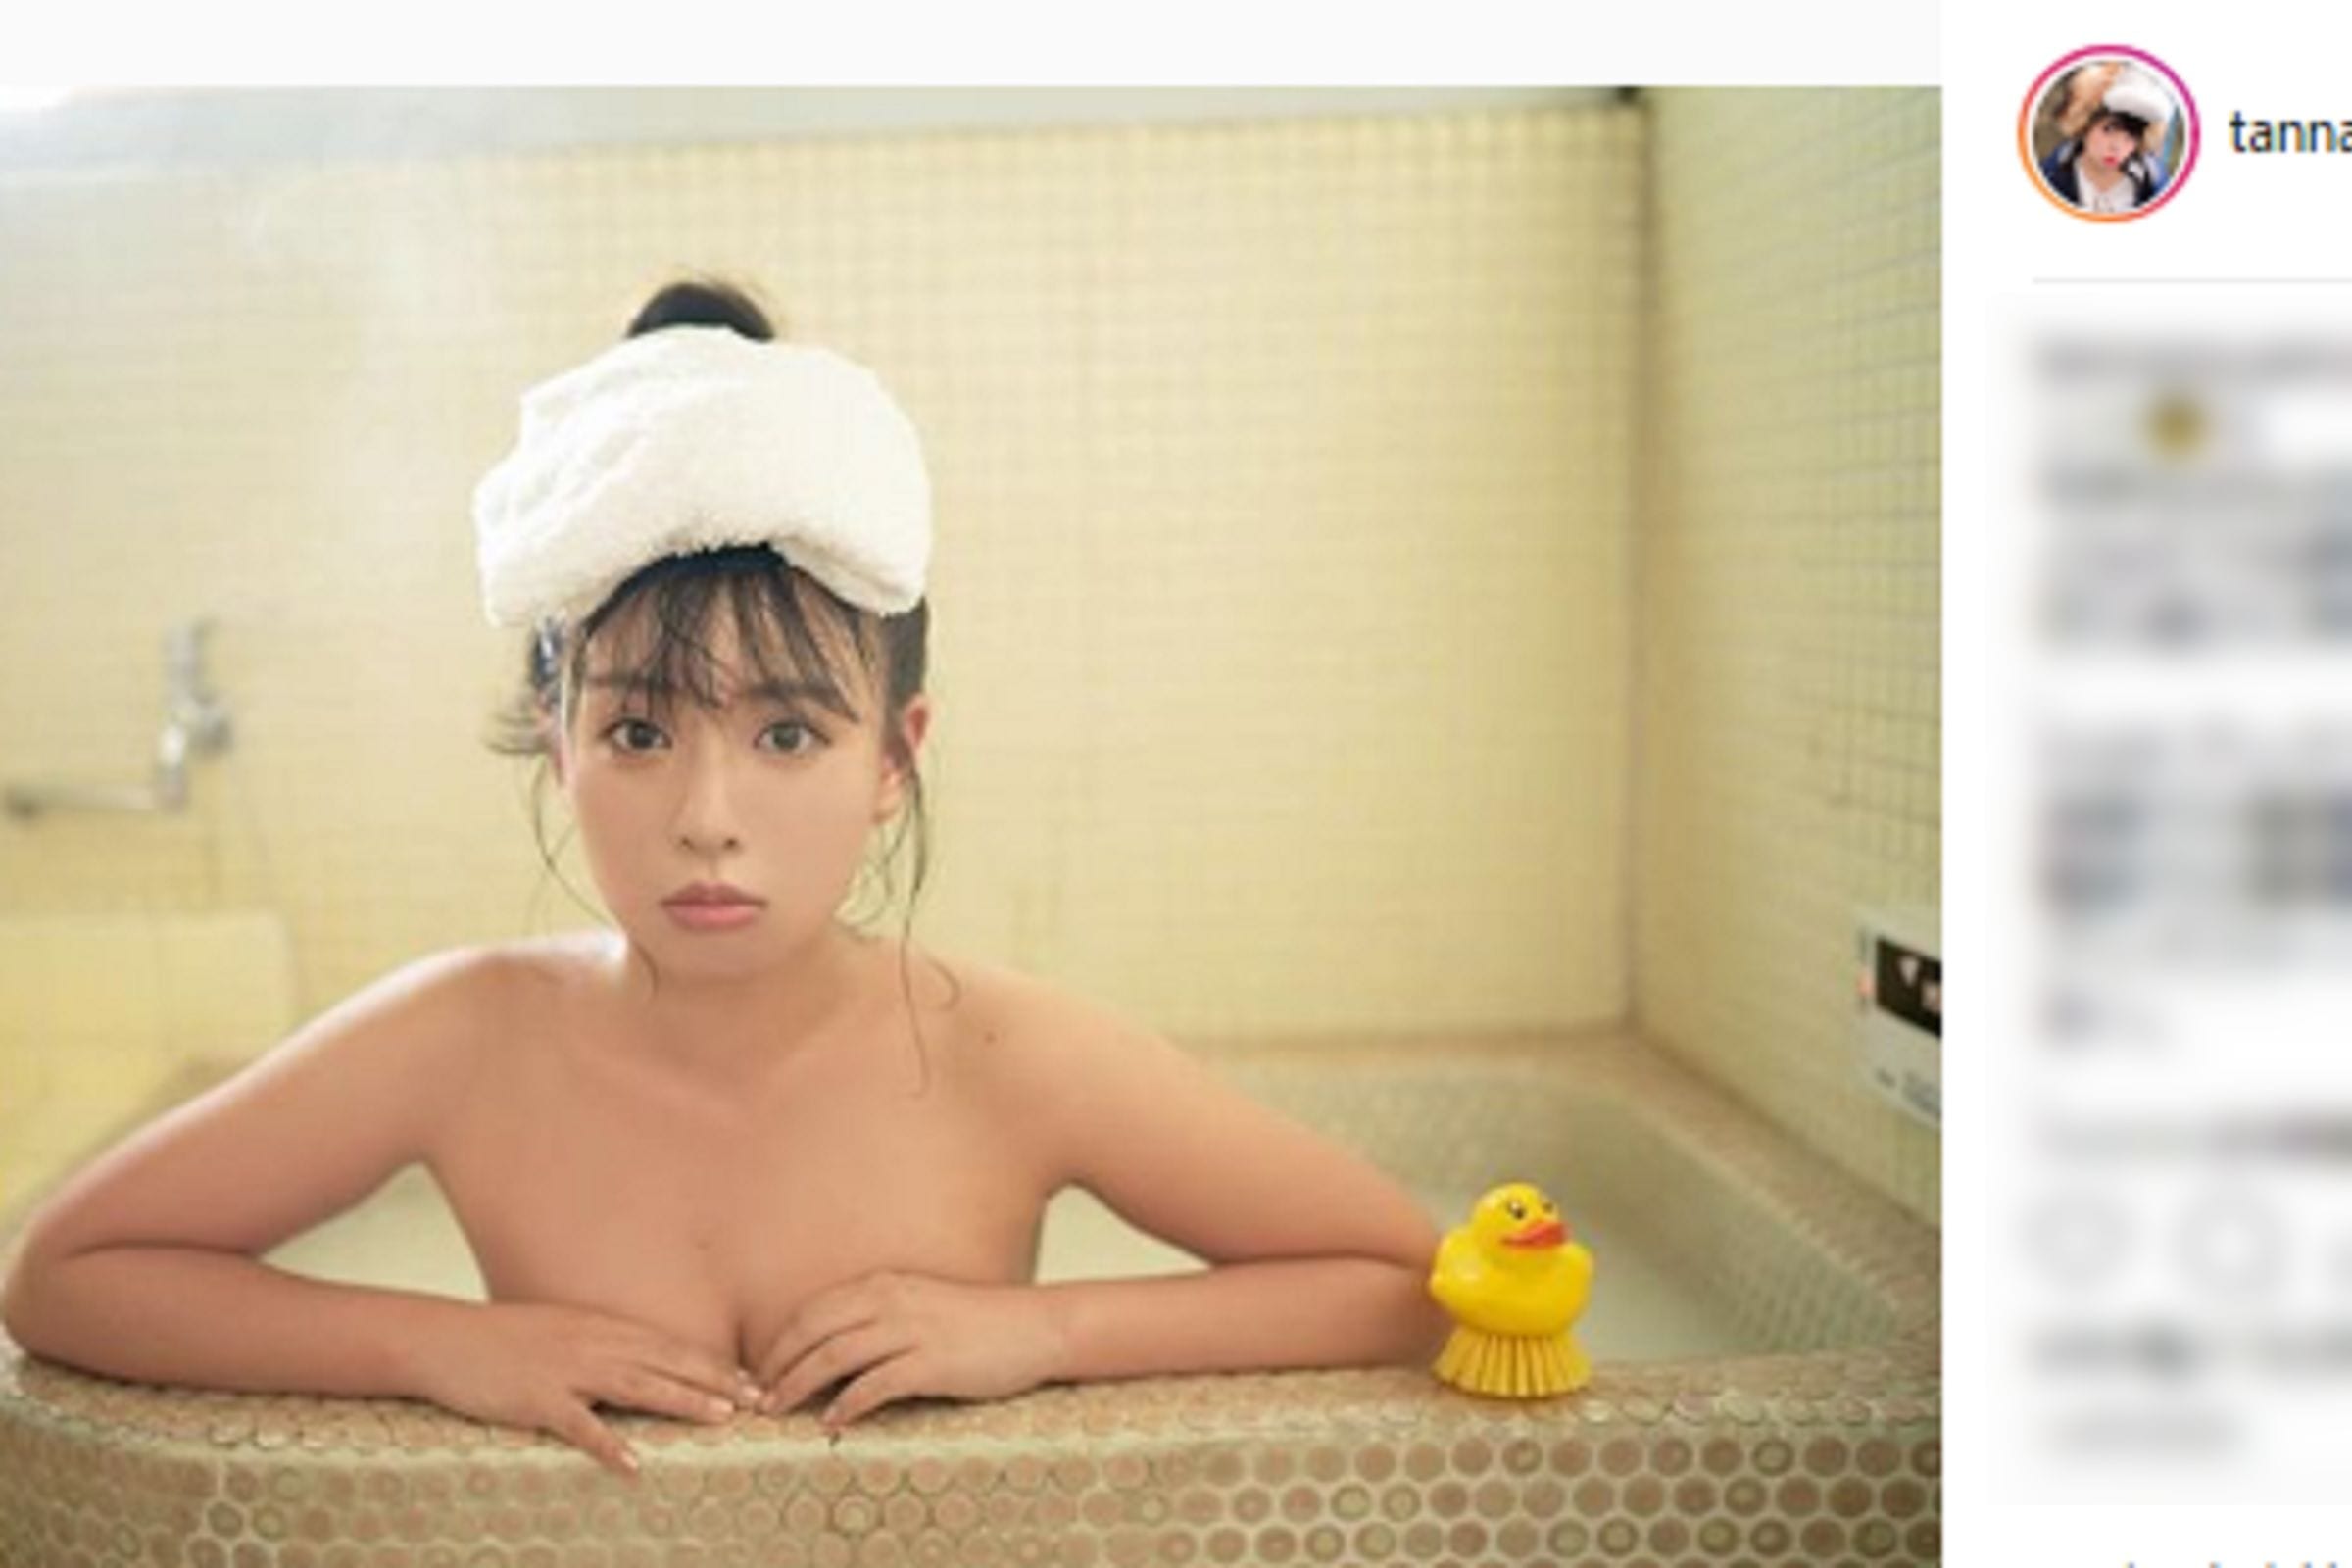 中山優馬の姉 と噂の山田菜々 エロかわいい入浴ショットを公開しファン歓喜 ニュースサイトしらべぇ